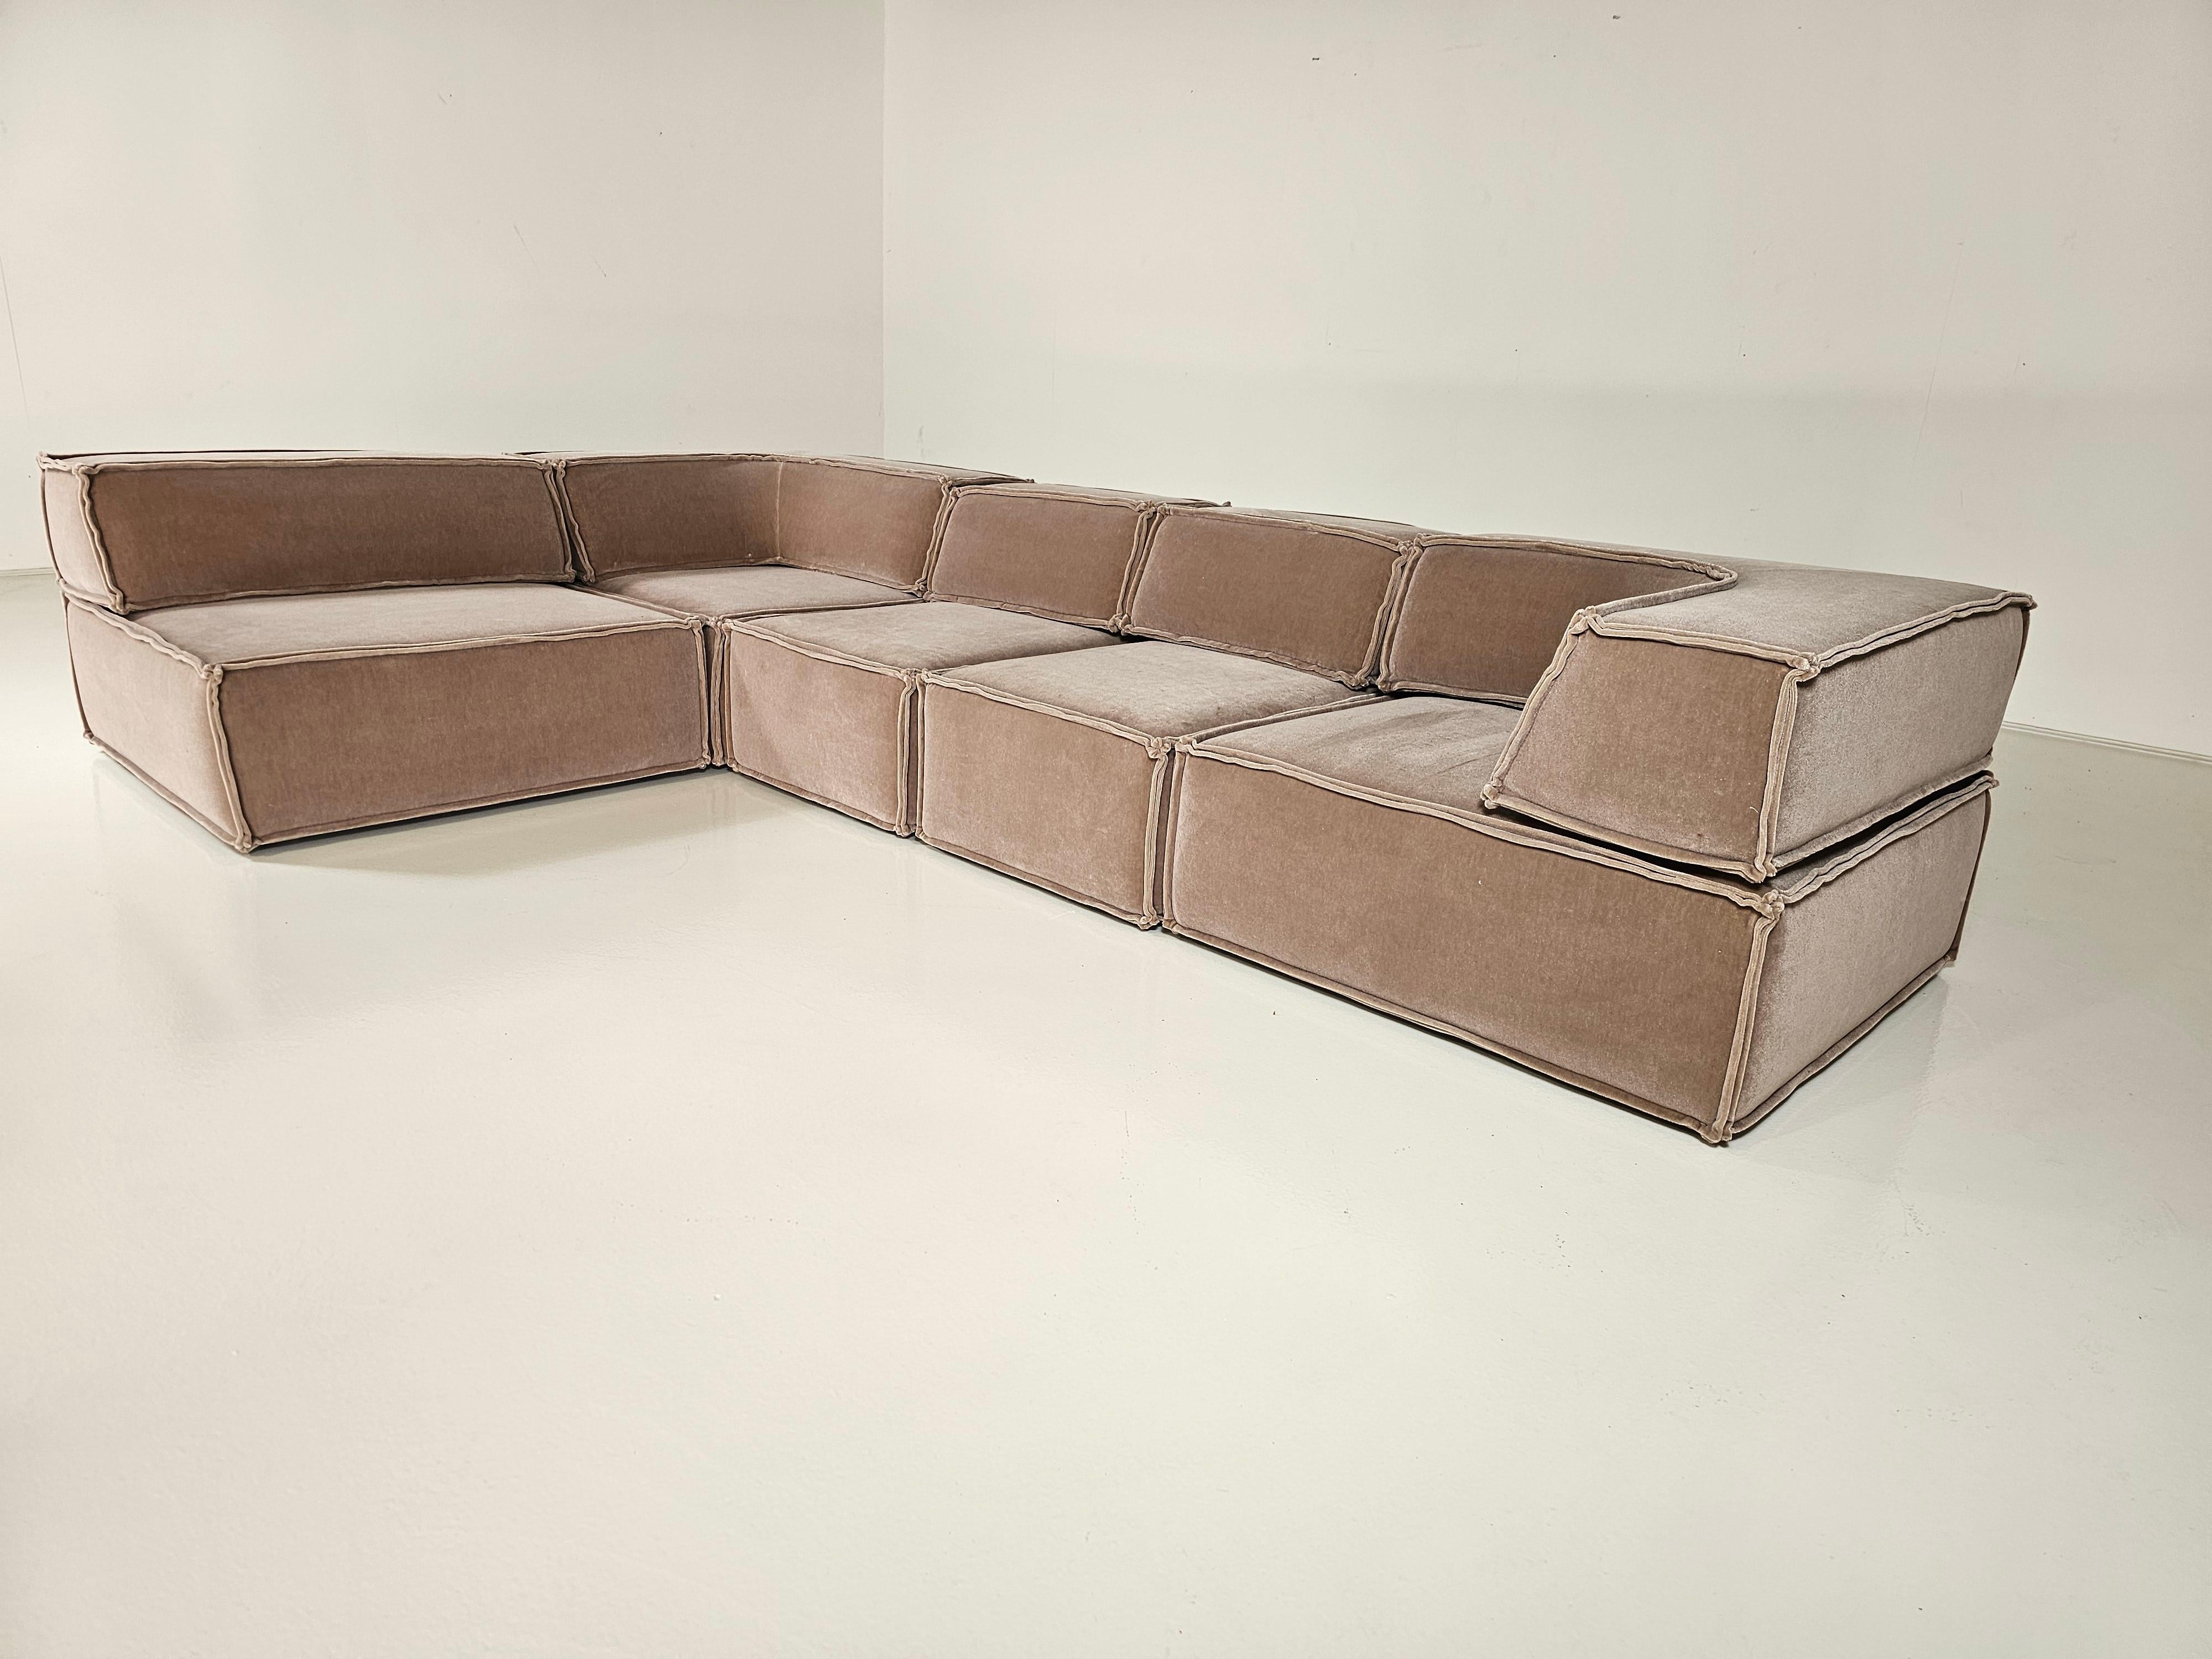 Dieses komfortable neue Polstersofa wurde von der Schweizer Designergruppe Team Form AG entworfen und in den 1970er Jahren von COR, Deutschland, hergestellt.  Alle Teile des Sofas können nach Belieben angeordnet werden. Auch die Rückenlehnen können